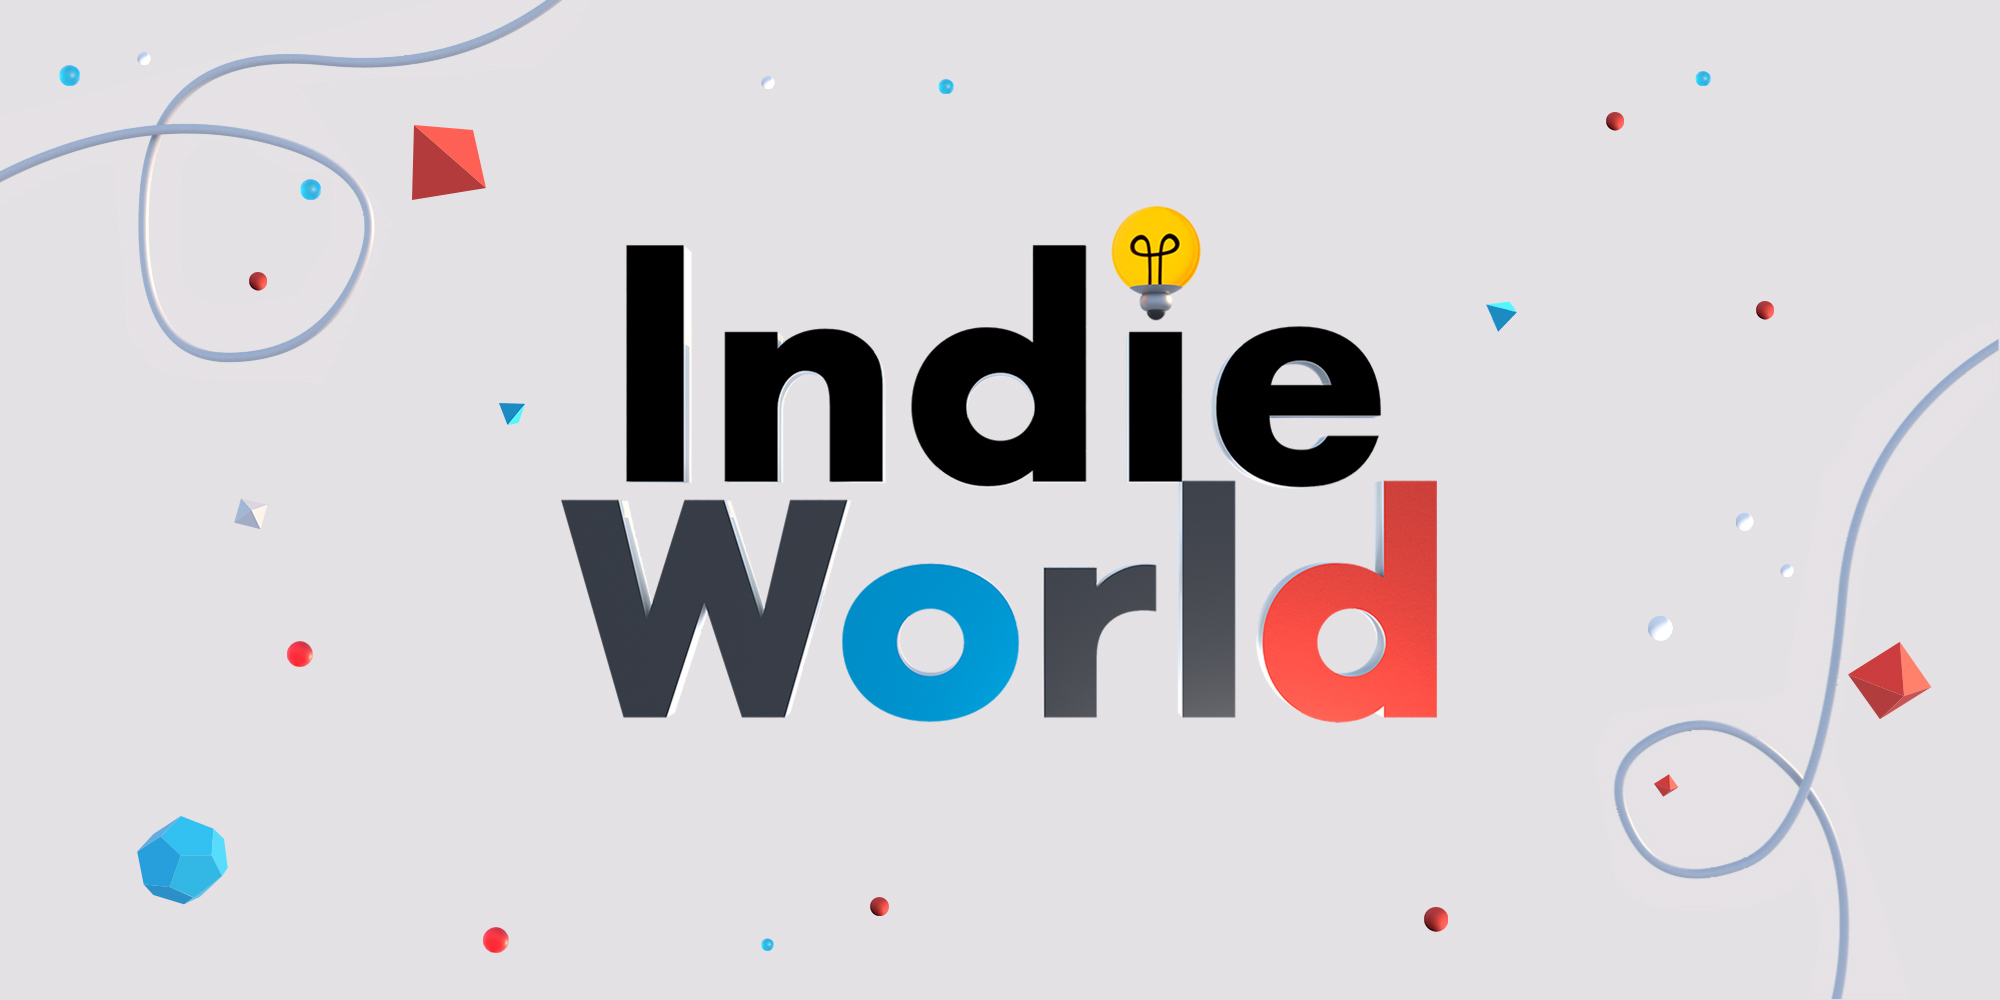 Portada de Resumen del Nintendo Indie World: Novedades, Fechas de Lanzamiento y Detalles de los Juegos Anunciados